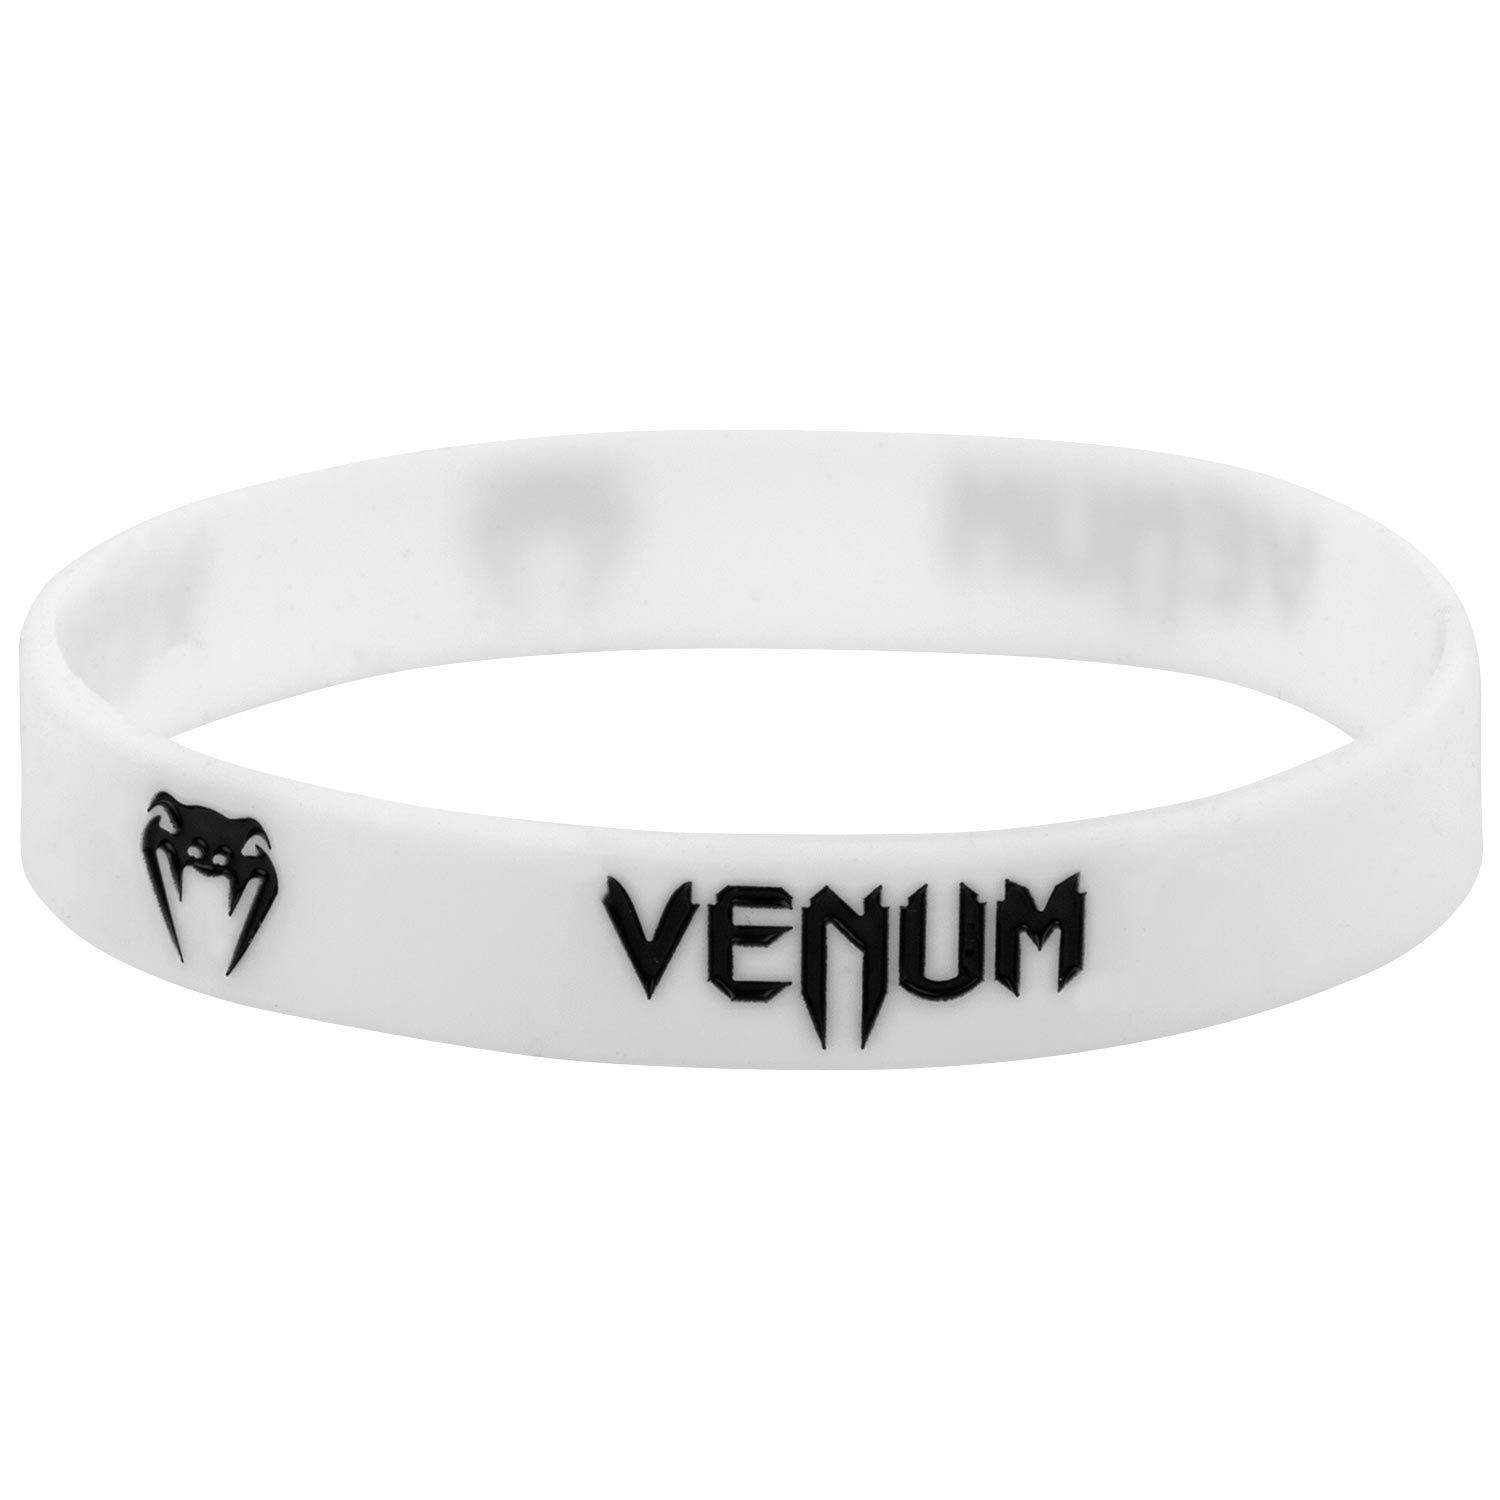 Bracelet Venum en silicone - Blanc/Noir